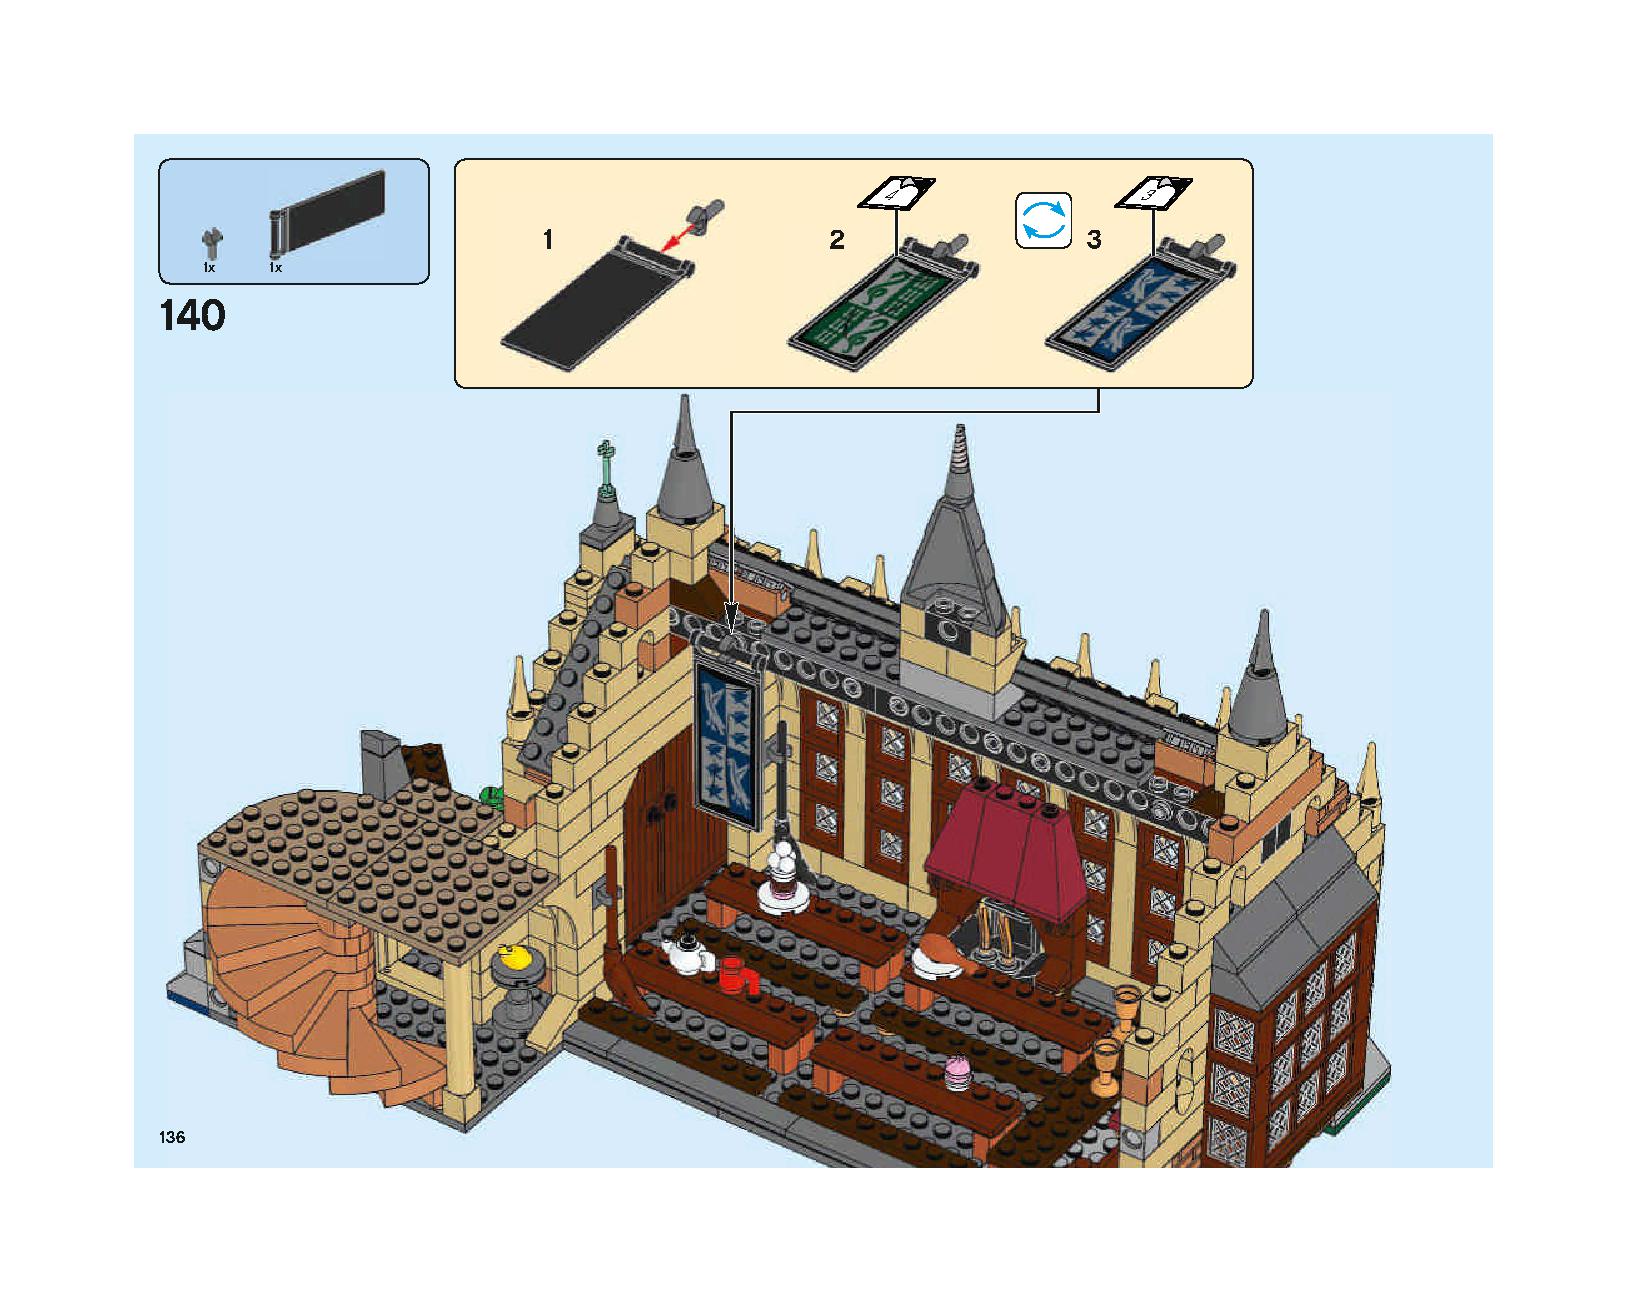 ホグワーツの大広間 75954 レゴの商品情報 レゴの説明書・組立方法 136 page